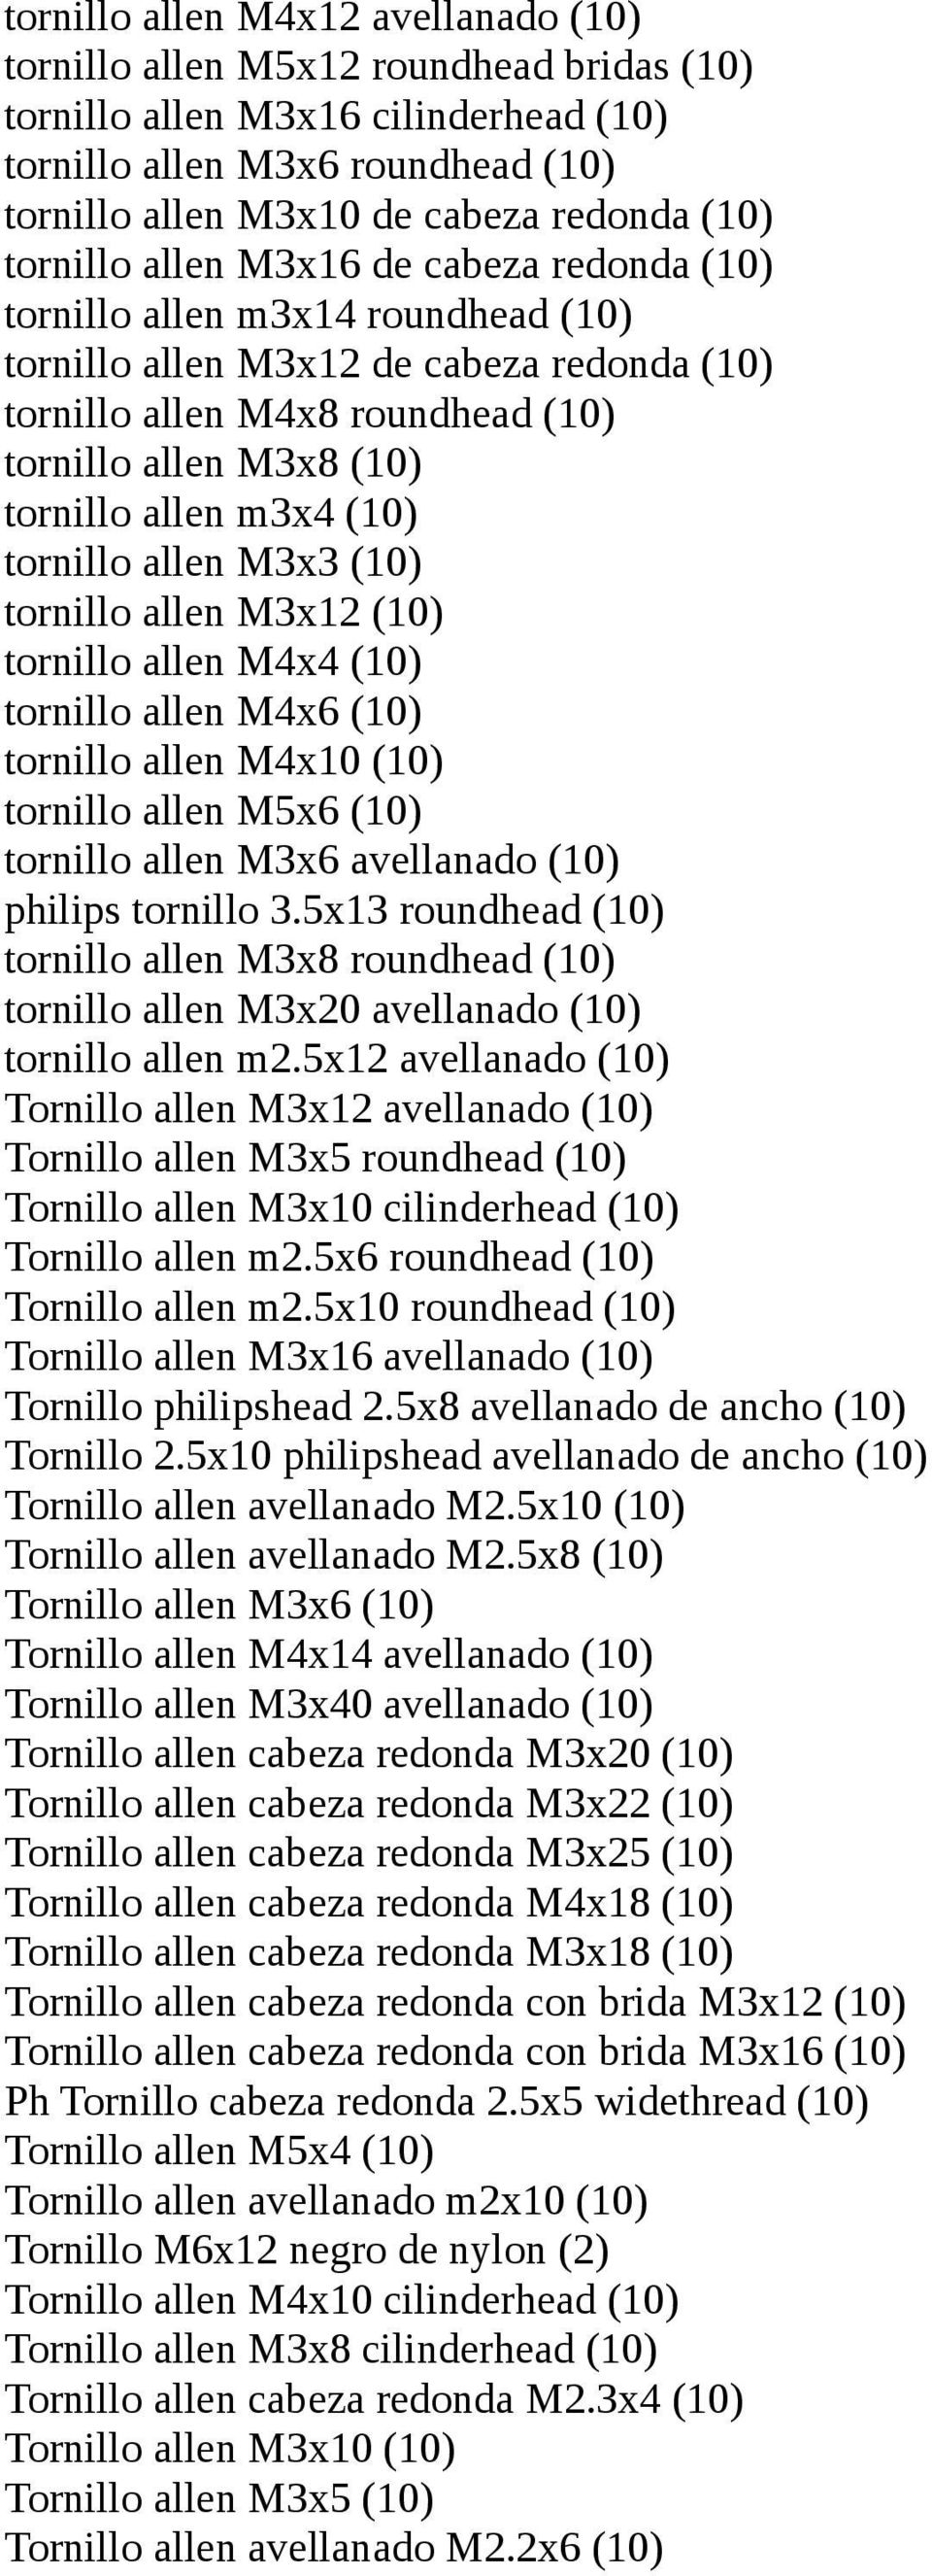 m3x4 (10) tornillo allen M3x3 (10) tornillo allen M3x12 (10) tornillo allen M4x4 (10) tornillo allen M4x6 (10) tornillo allen M4x10 (10) tornillo allen M5x6 (10) tornillo allen M3x6 avellanado (10)